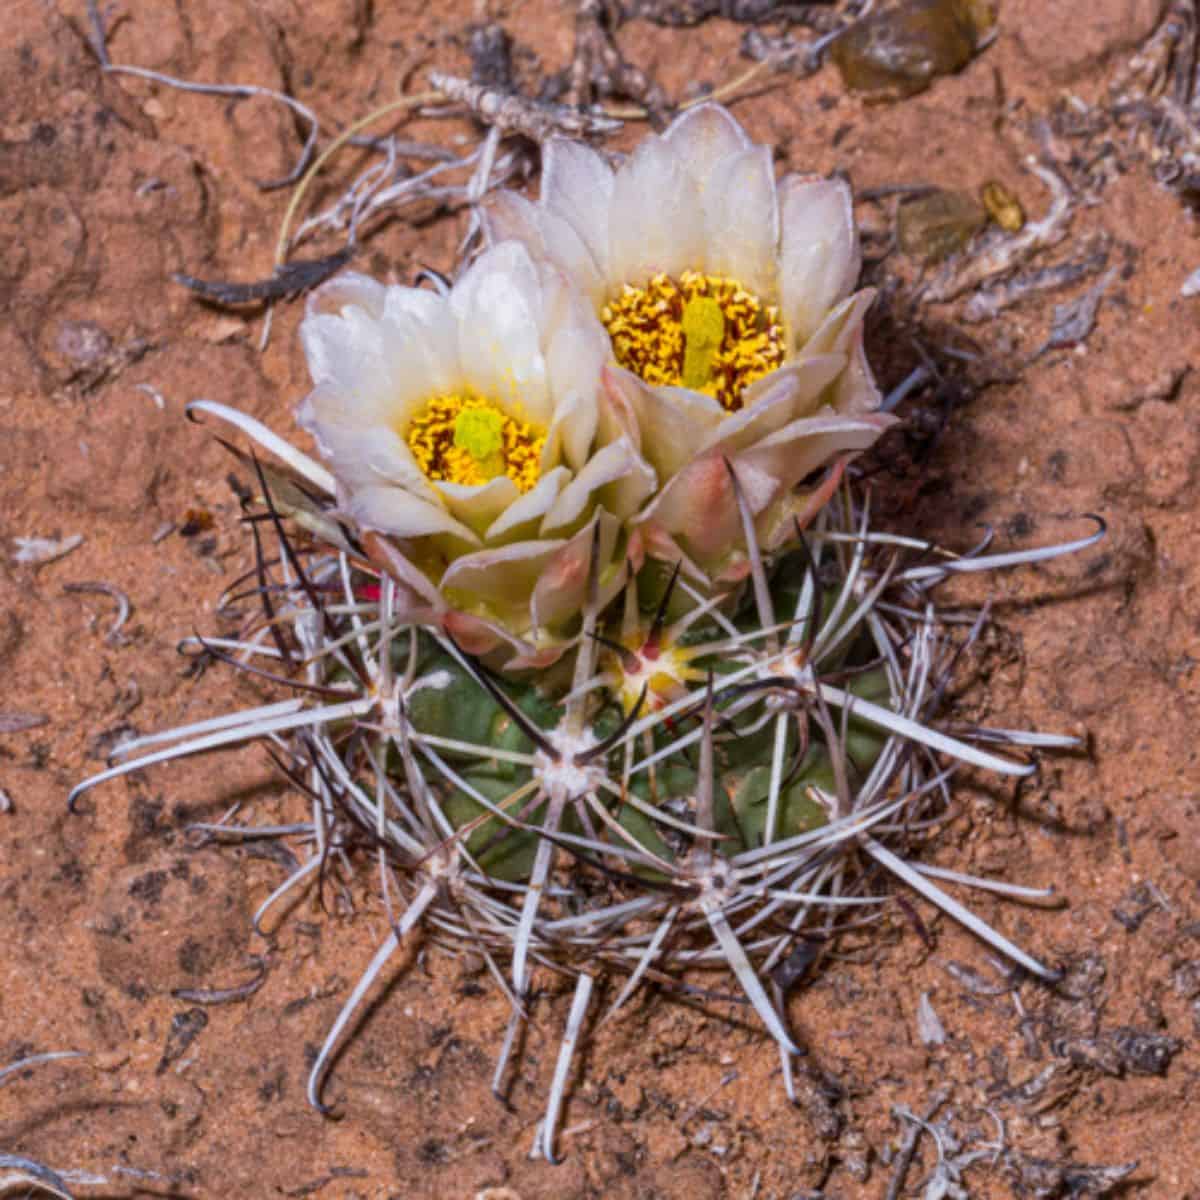 Flowering Sclerocactus wrightiae - Wright fishhook cactus